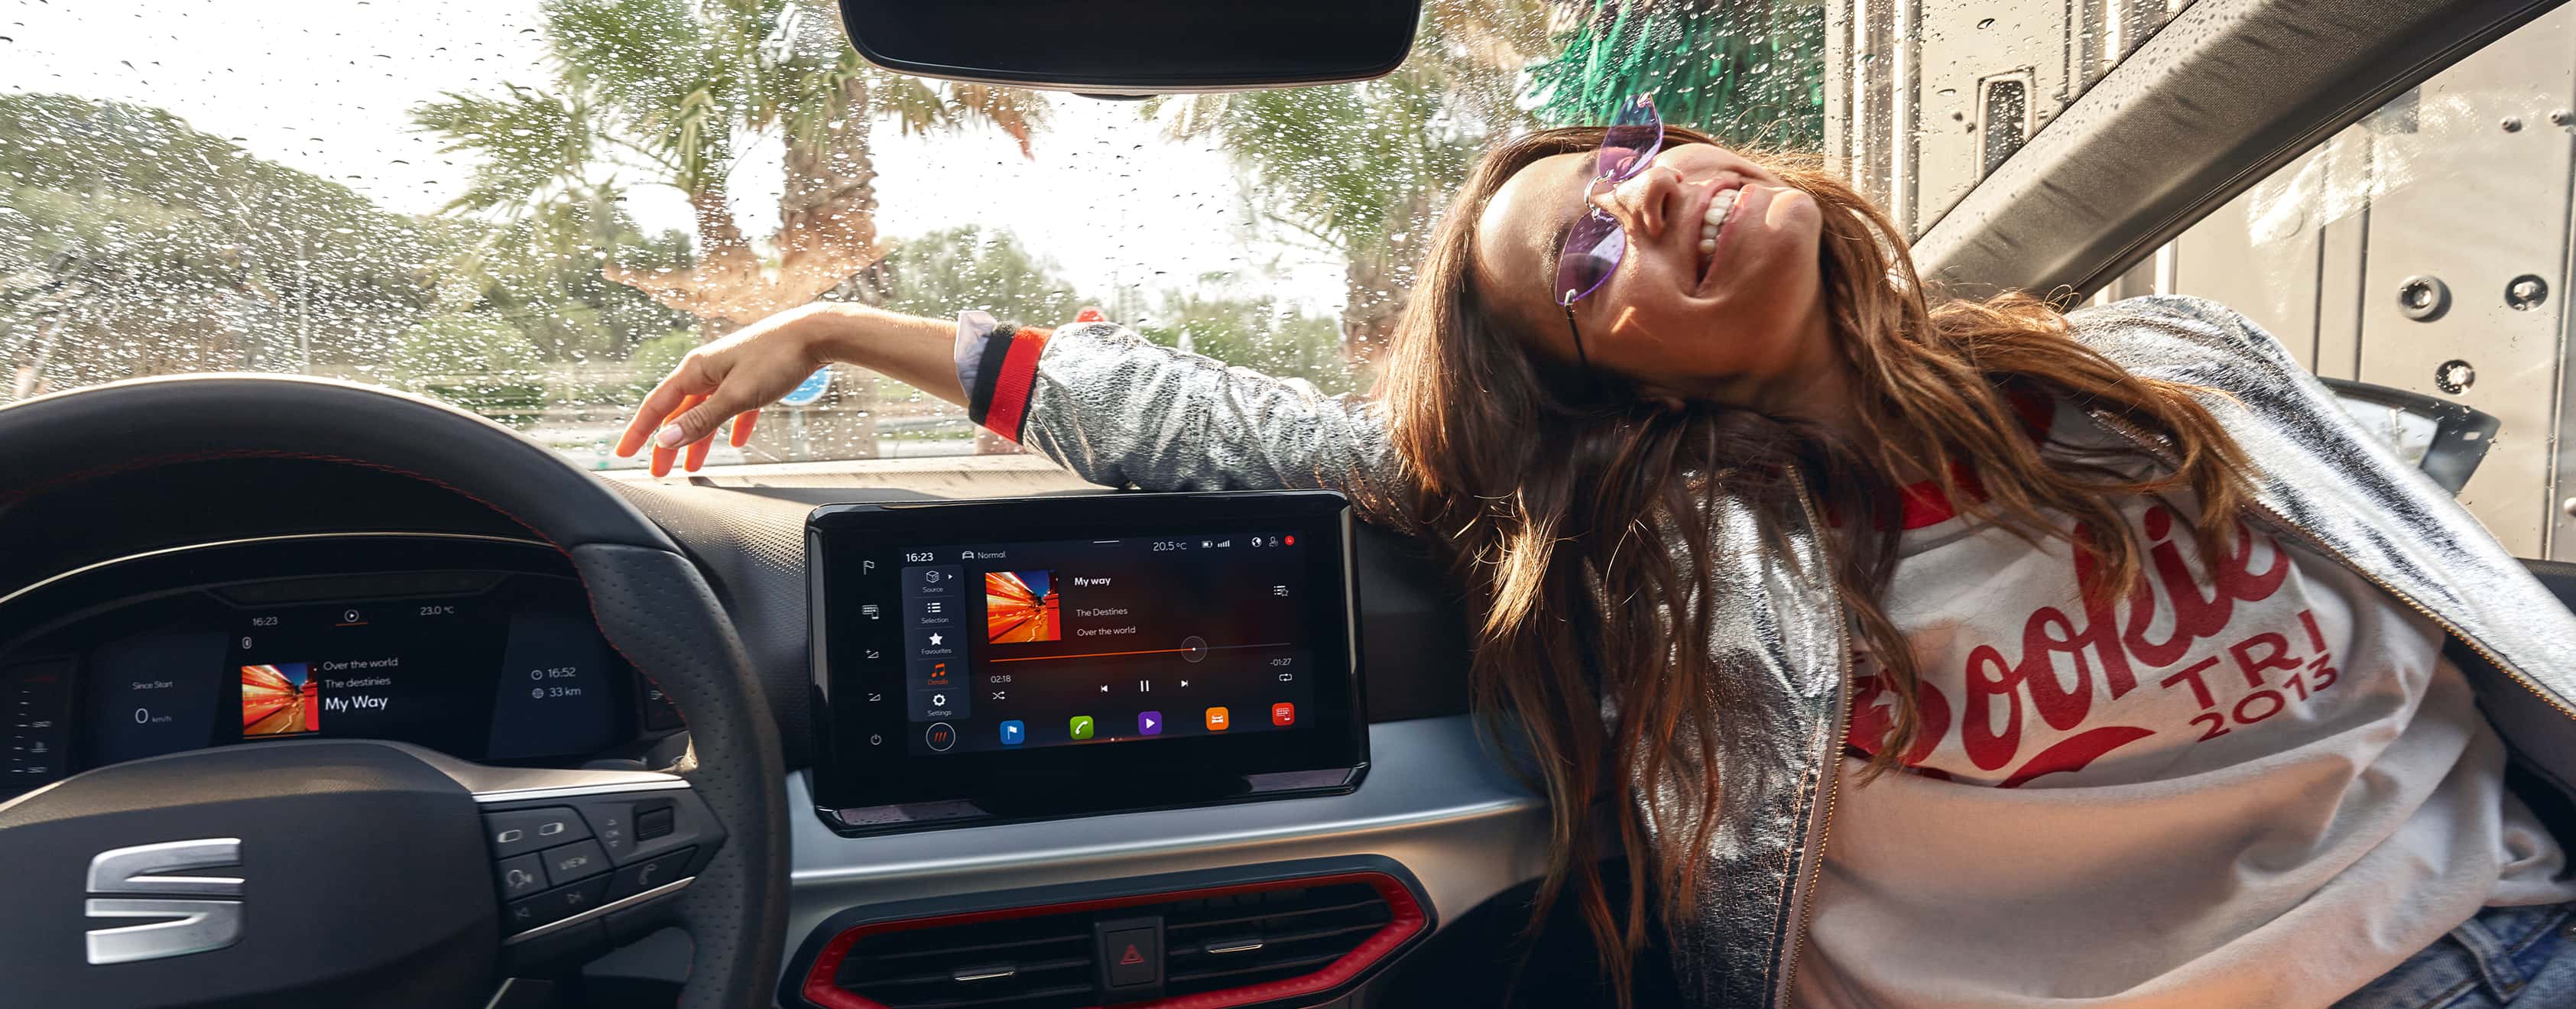 Femme assise à l’intérieur d’un SEAT Ibiza à côté de l’écran tactile flottant de 9,2"